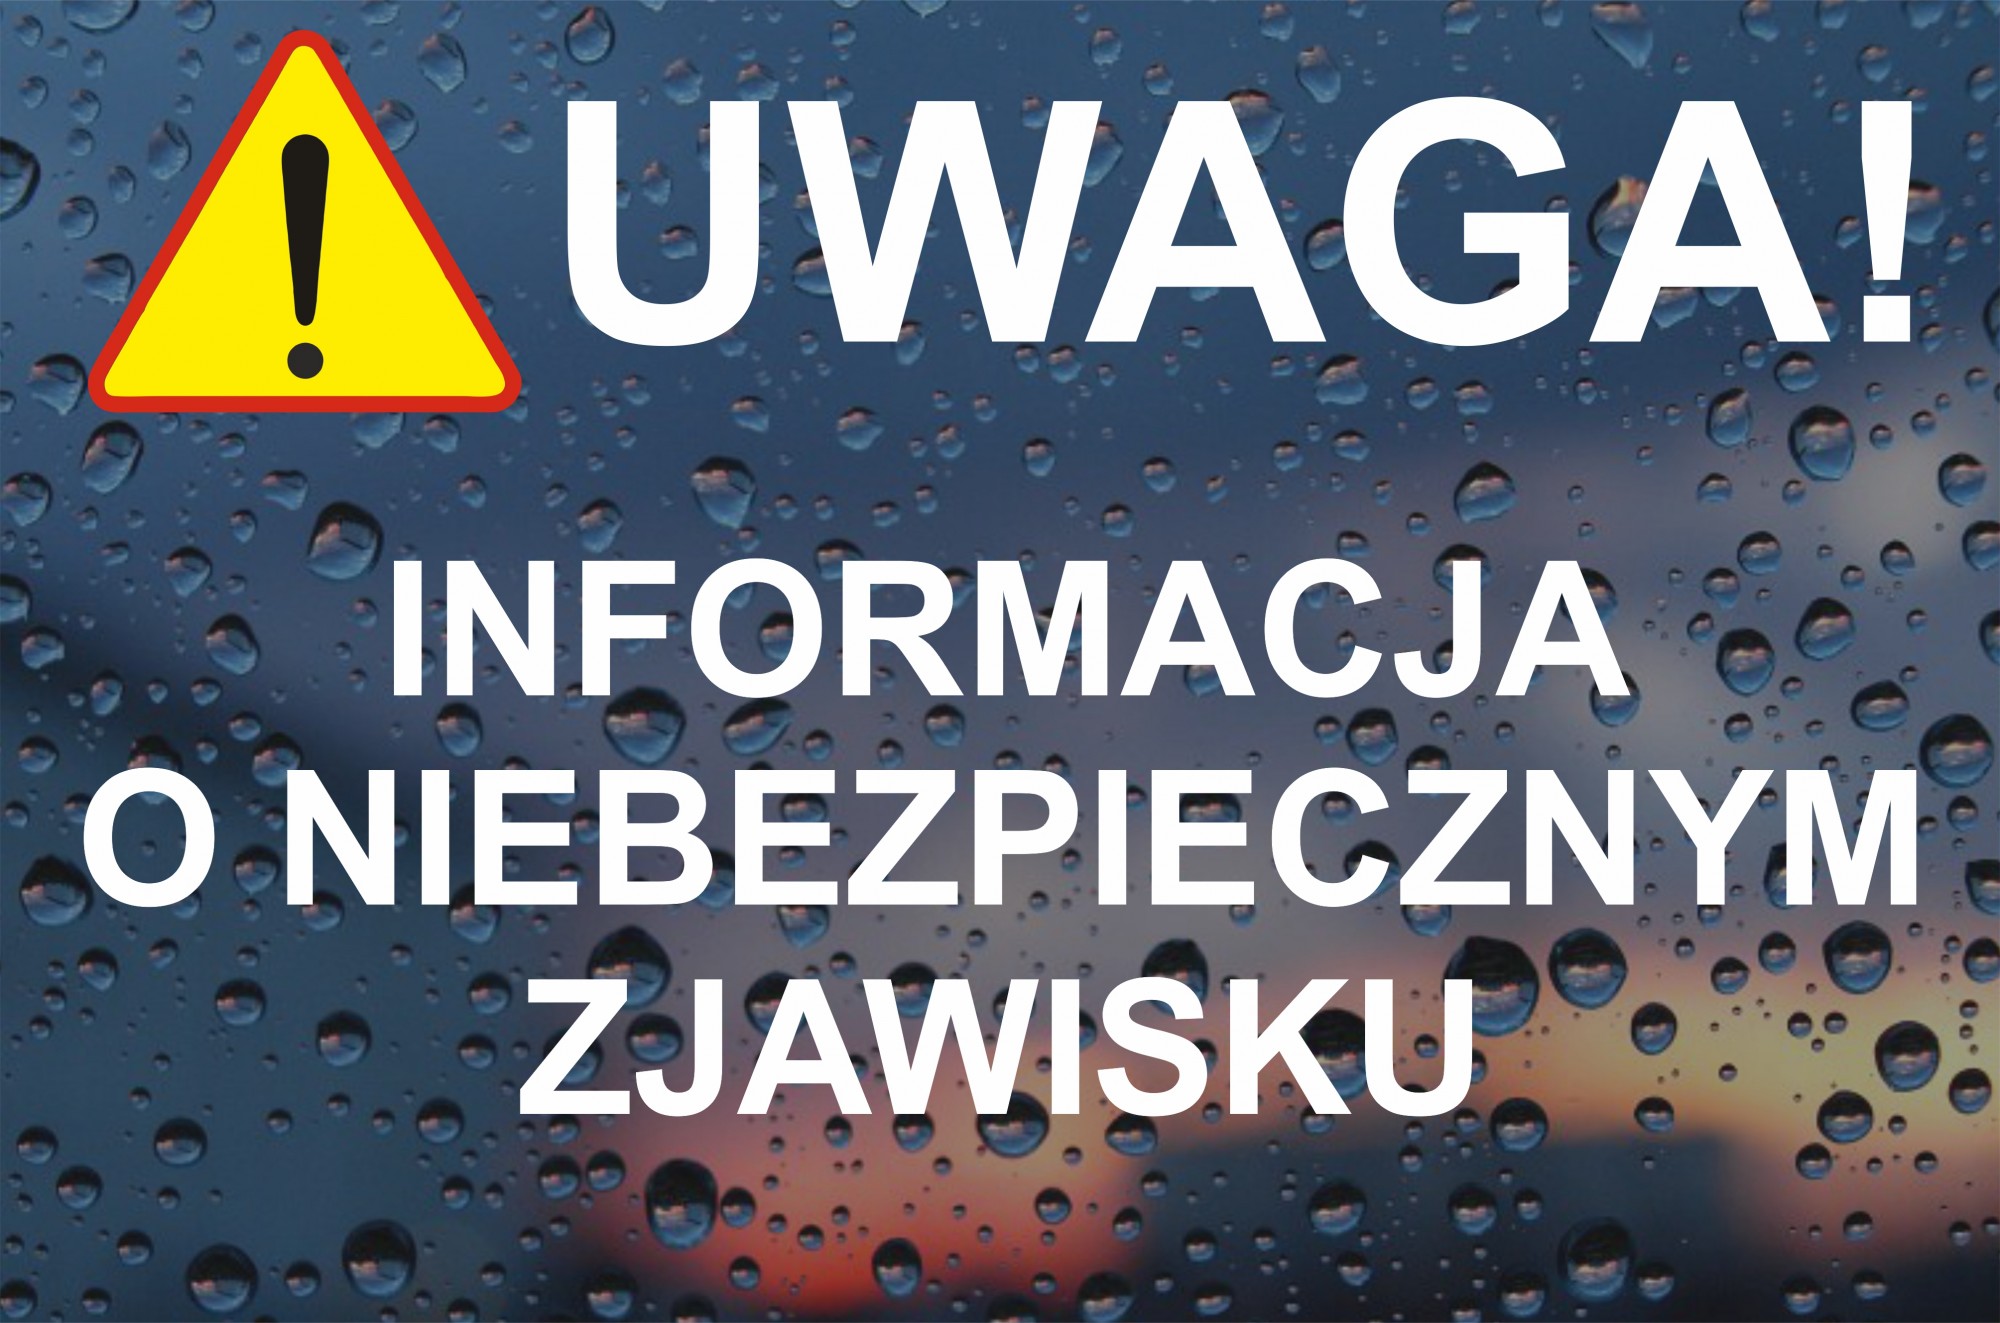 UWAGA! Informacja o niebezpiecznym zjawisku